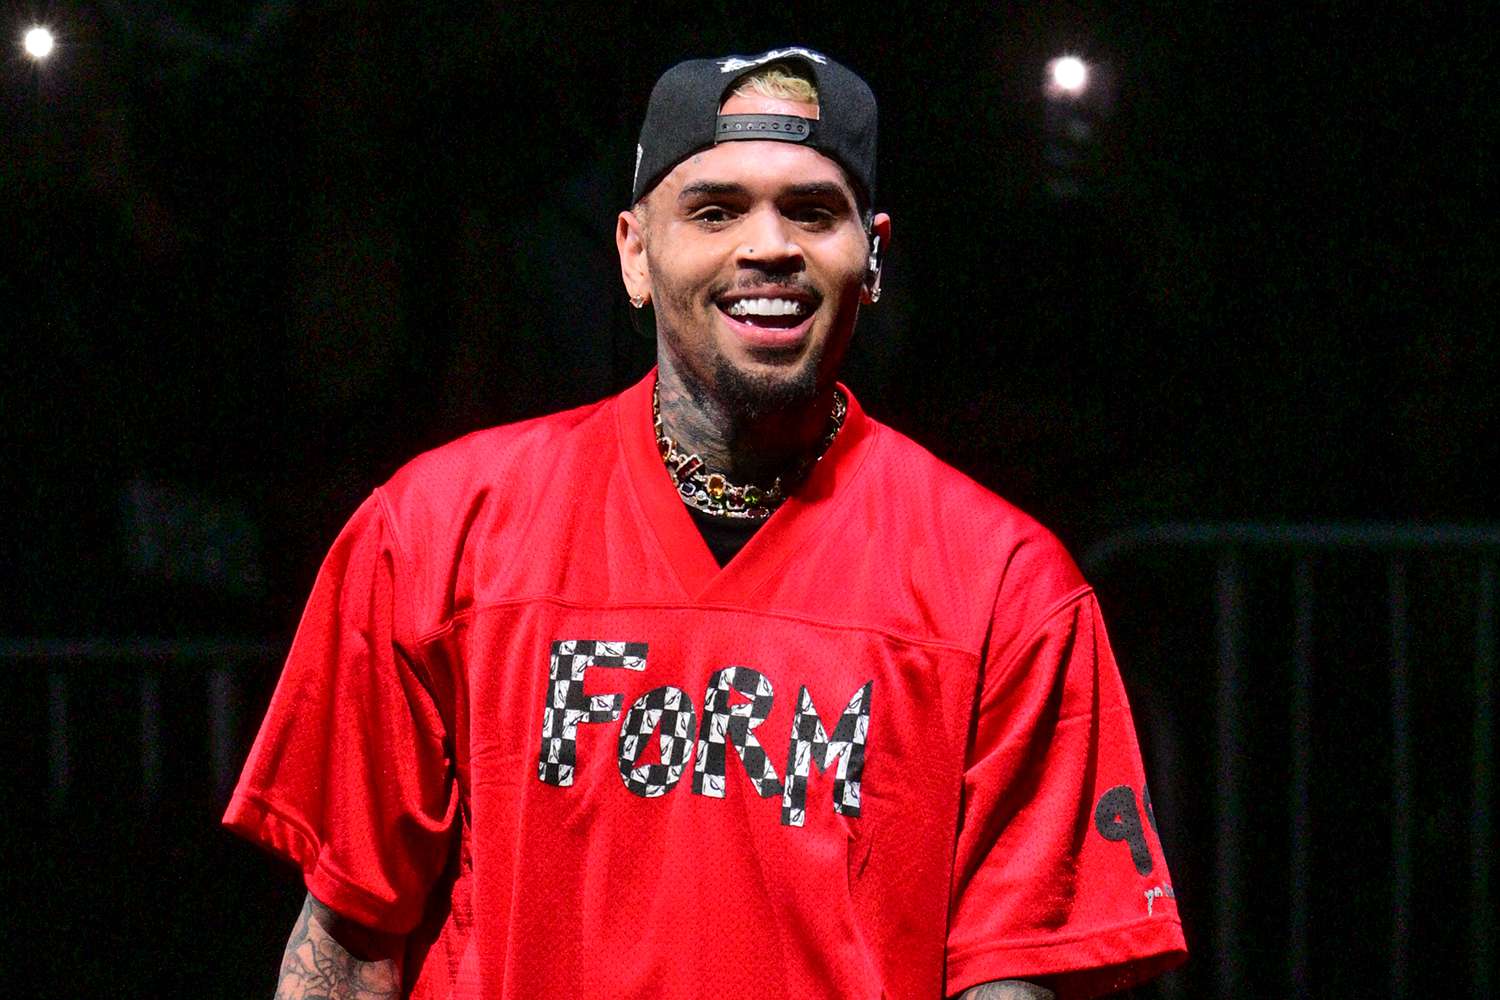 Ngec në litar në mes të performancës, videoja me reperin Chris Brown bëhet virale në rrjet!